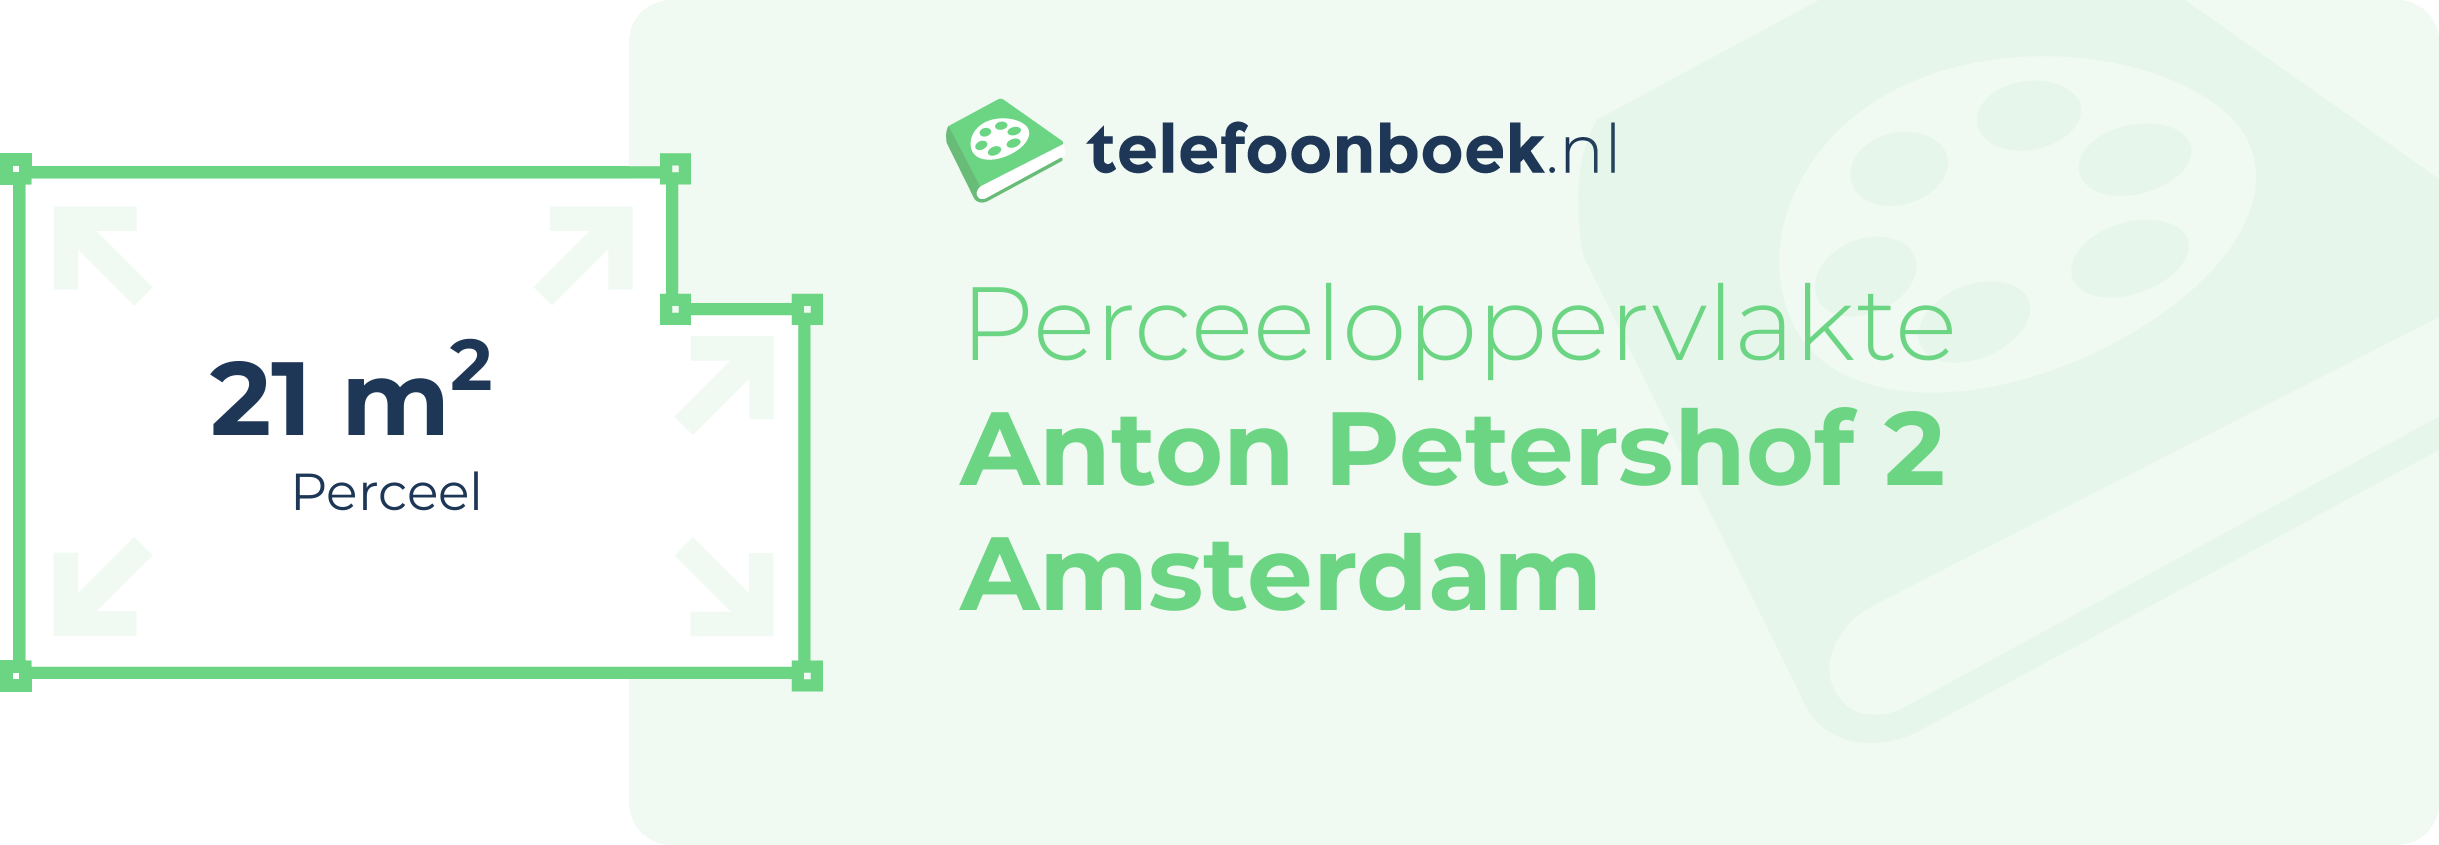 Perceeloppervlakte Anton Petershof 2 Amsterdam